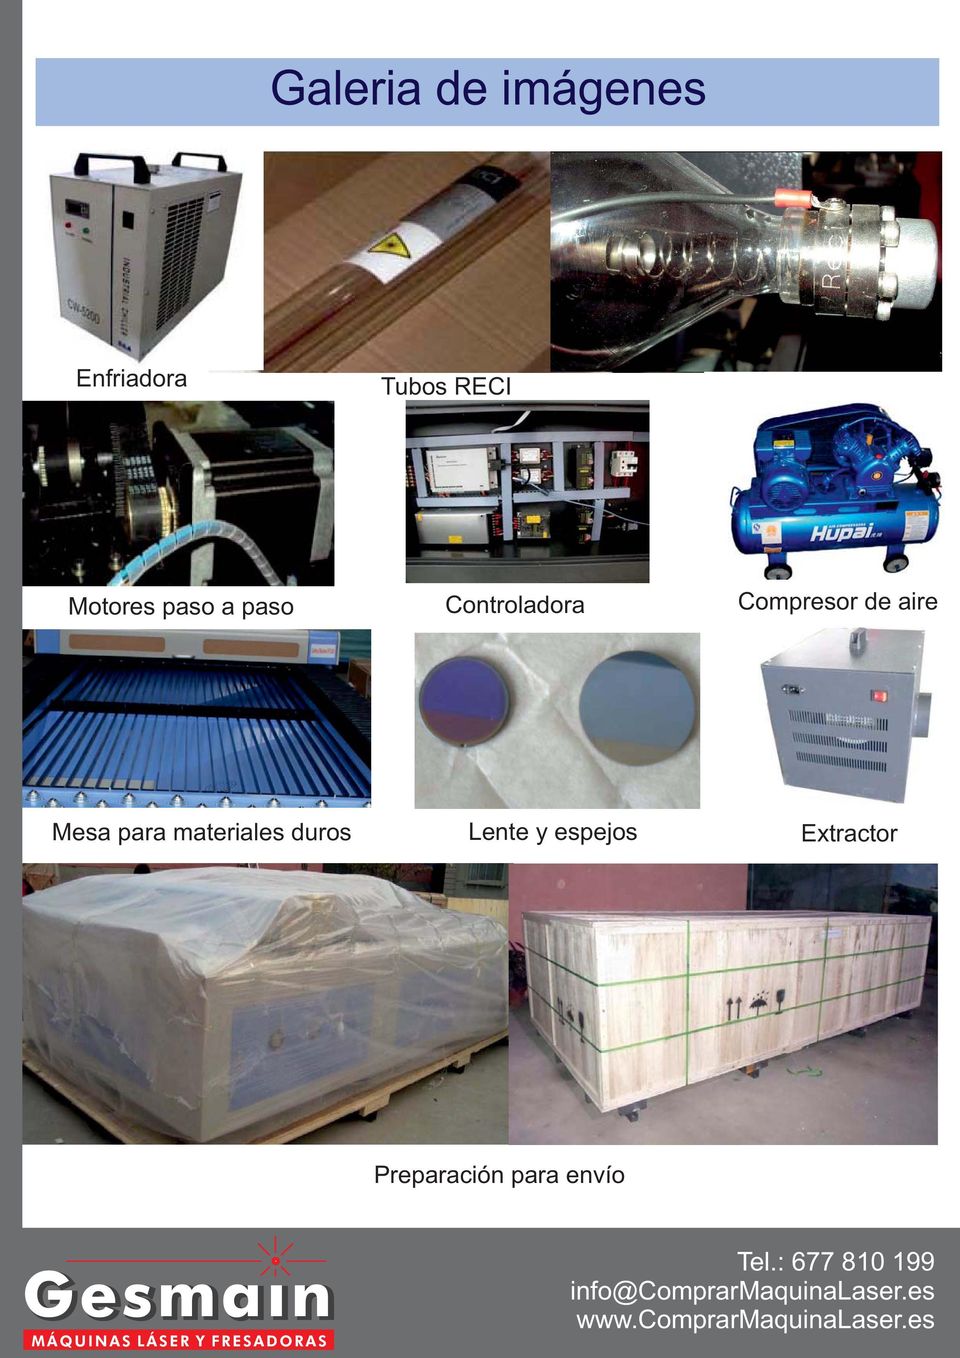 Compresor de aire Mesa para materiales